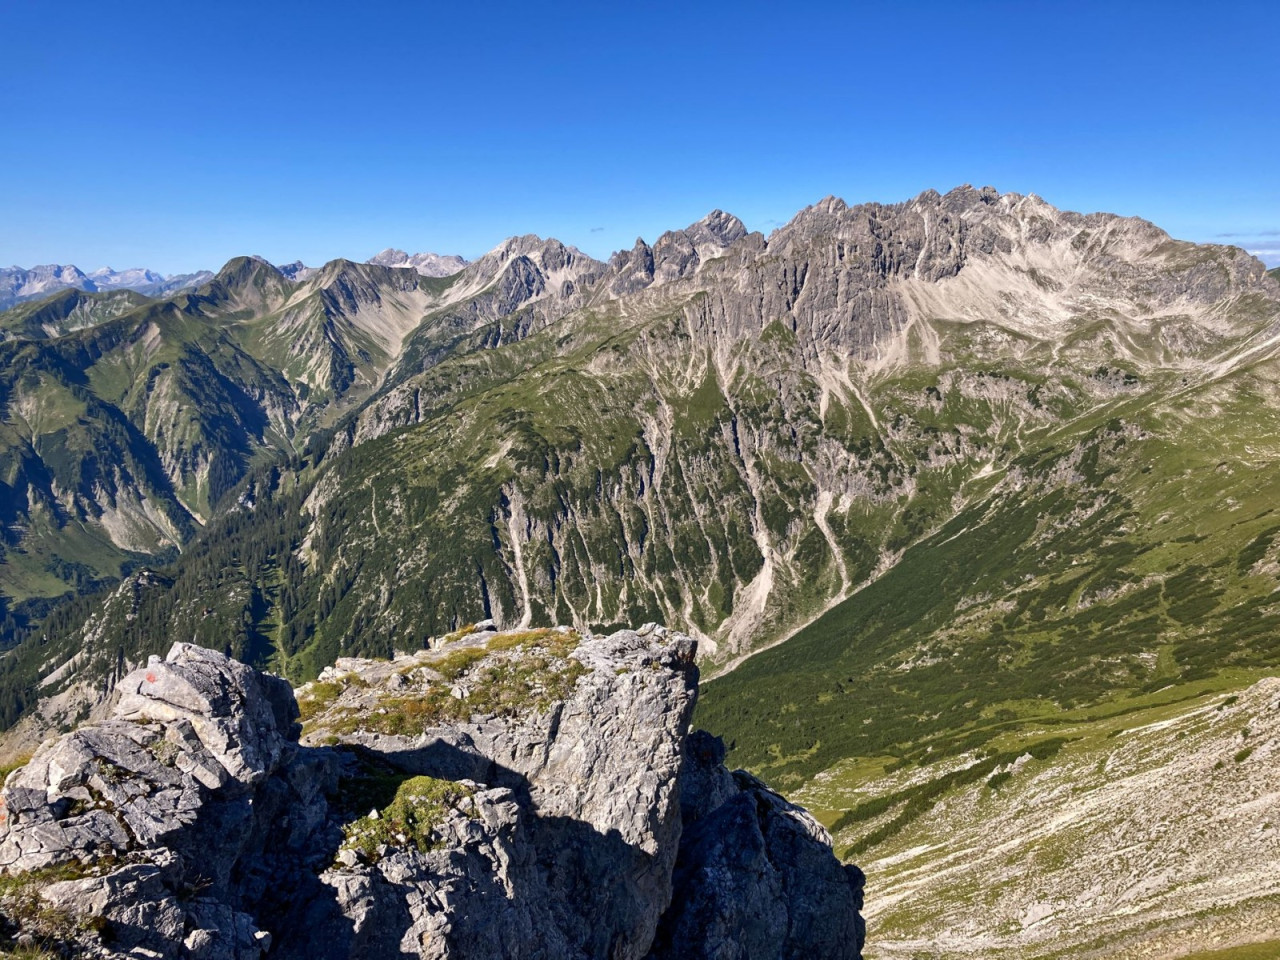  Blick auf die Allgäuer Alpen